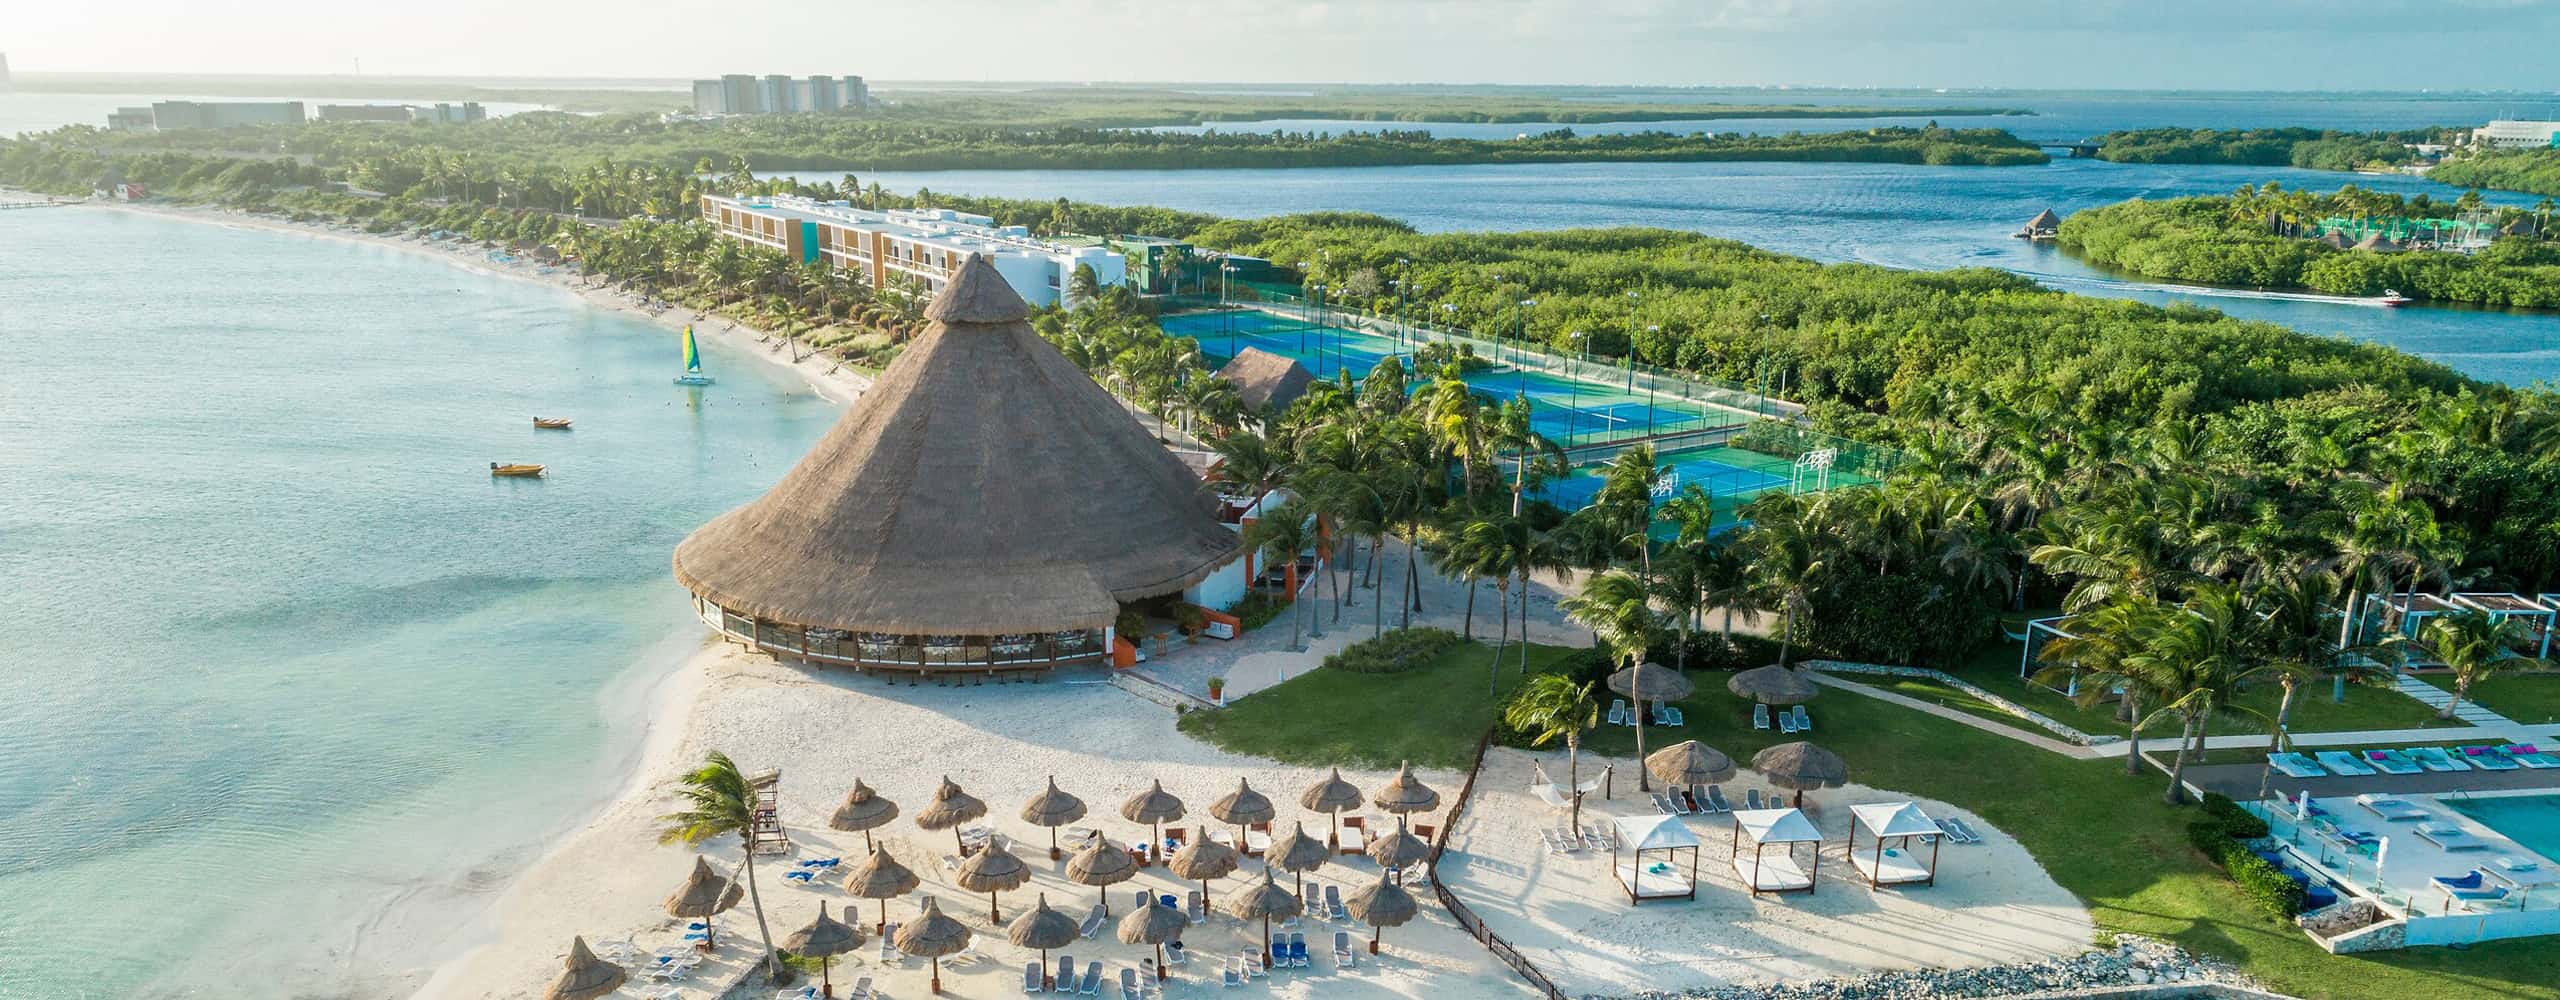 Club Med Cancun Yucatan, Mexico